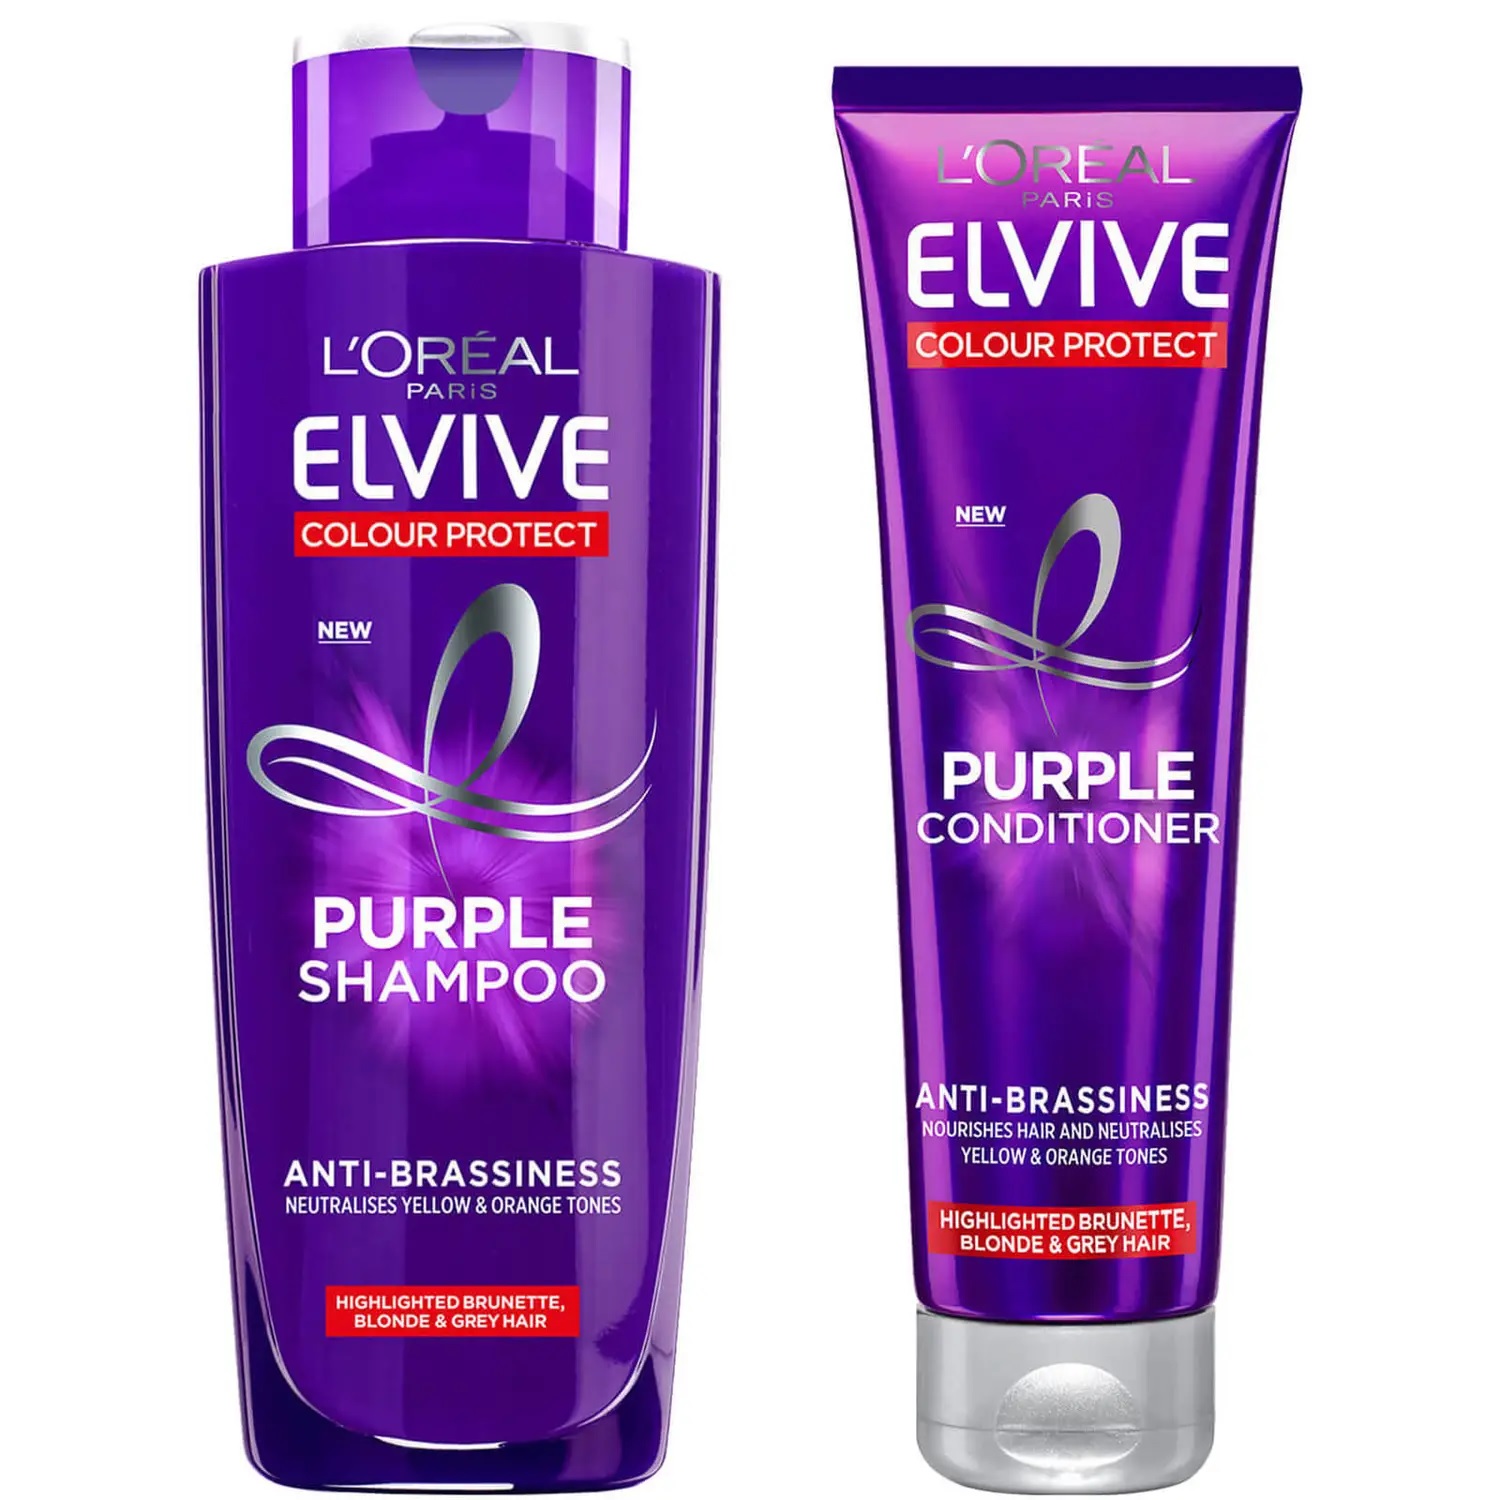 Verwöhnen Sie Ihr Haar mit dem lila Shampoo- und Spülungsset von L'Oreal Elvive zum Preis von 5,99 £